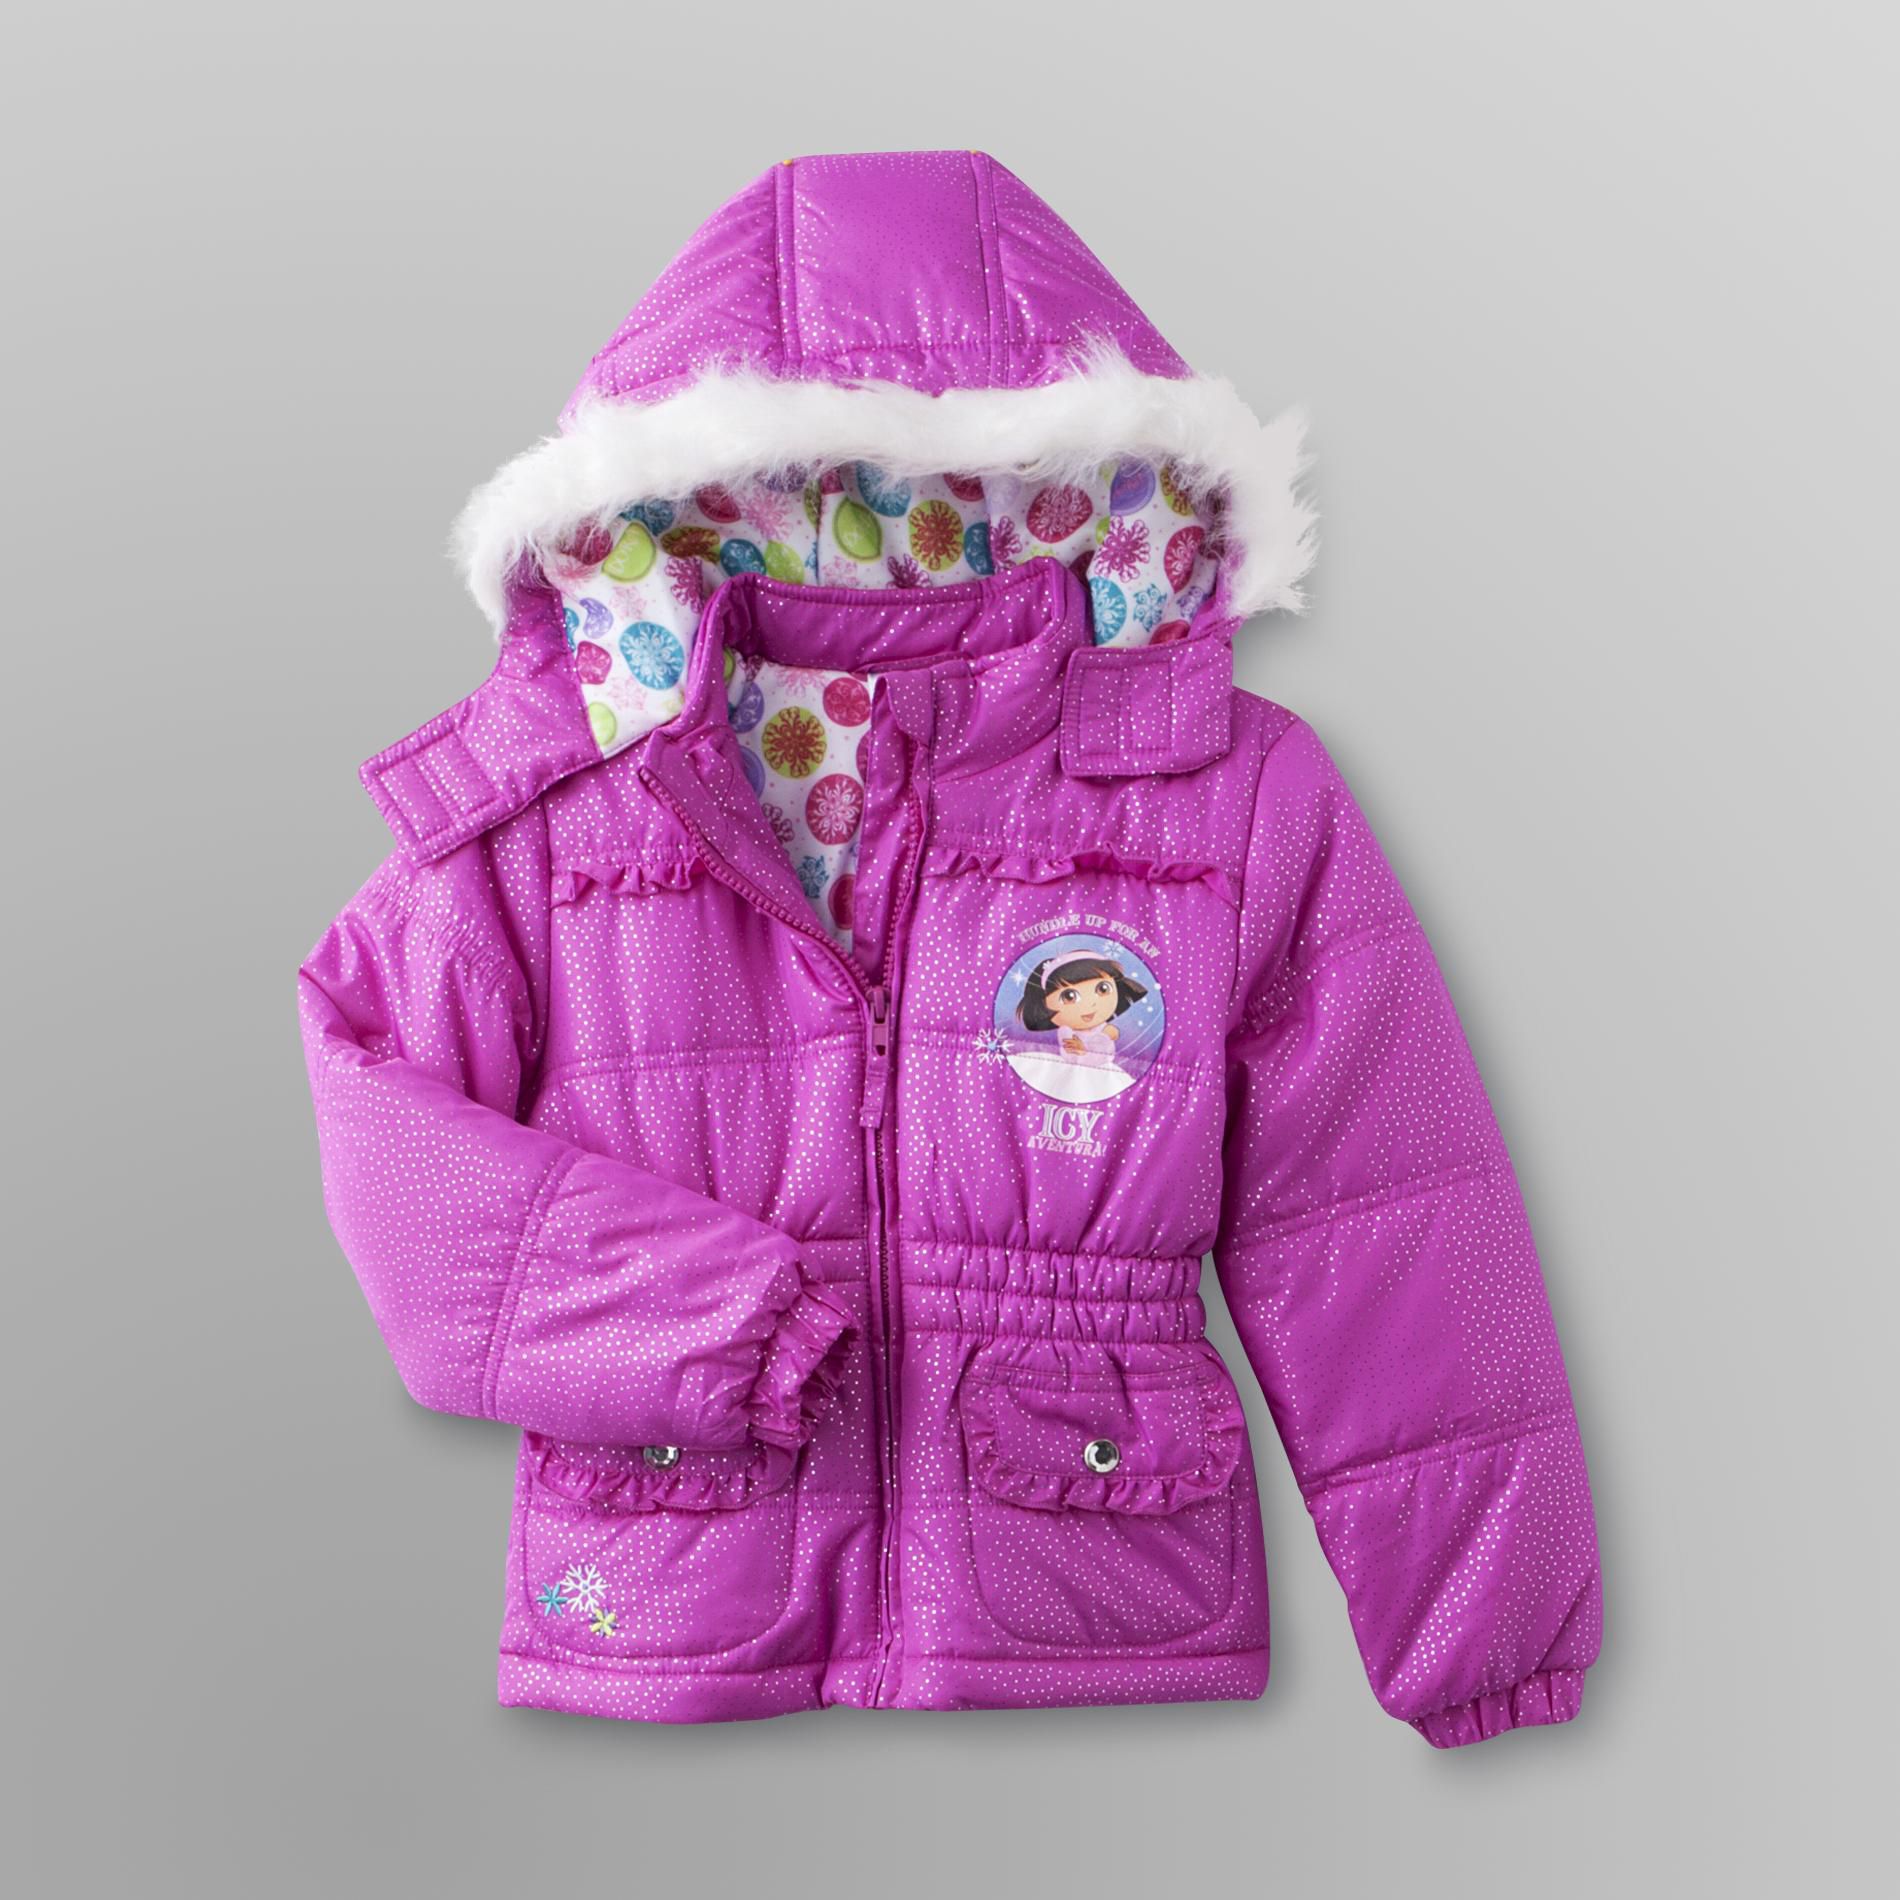 Nickelodeon Dora the Explorer Girl's Puffer Jacket